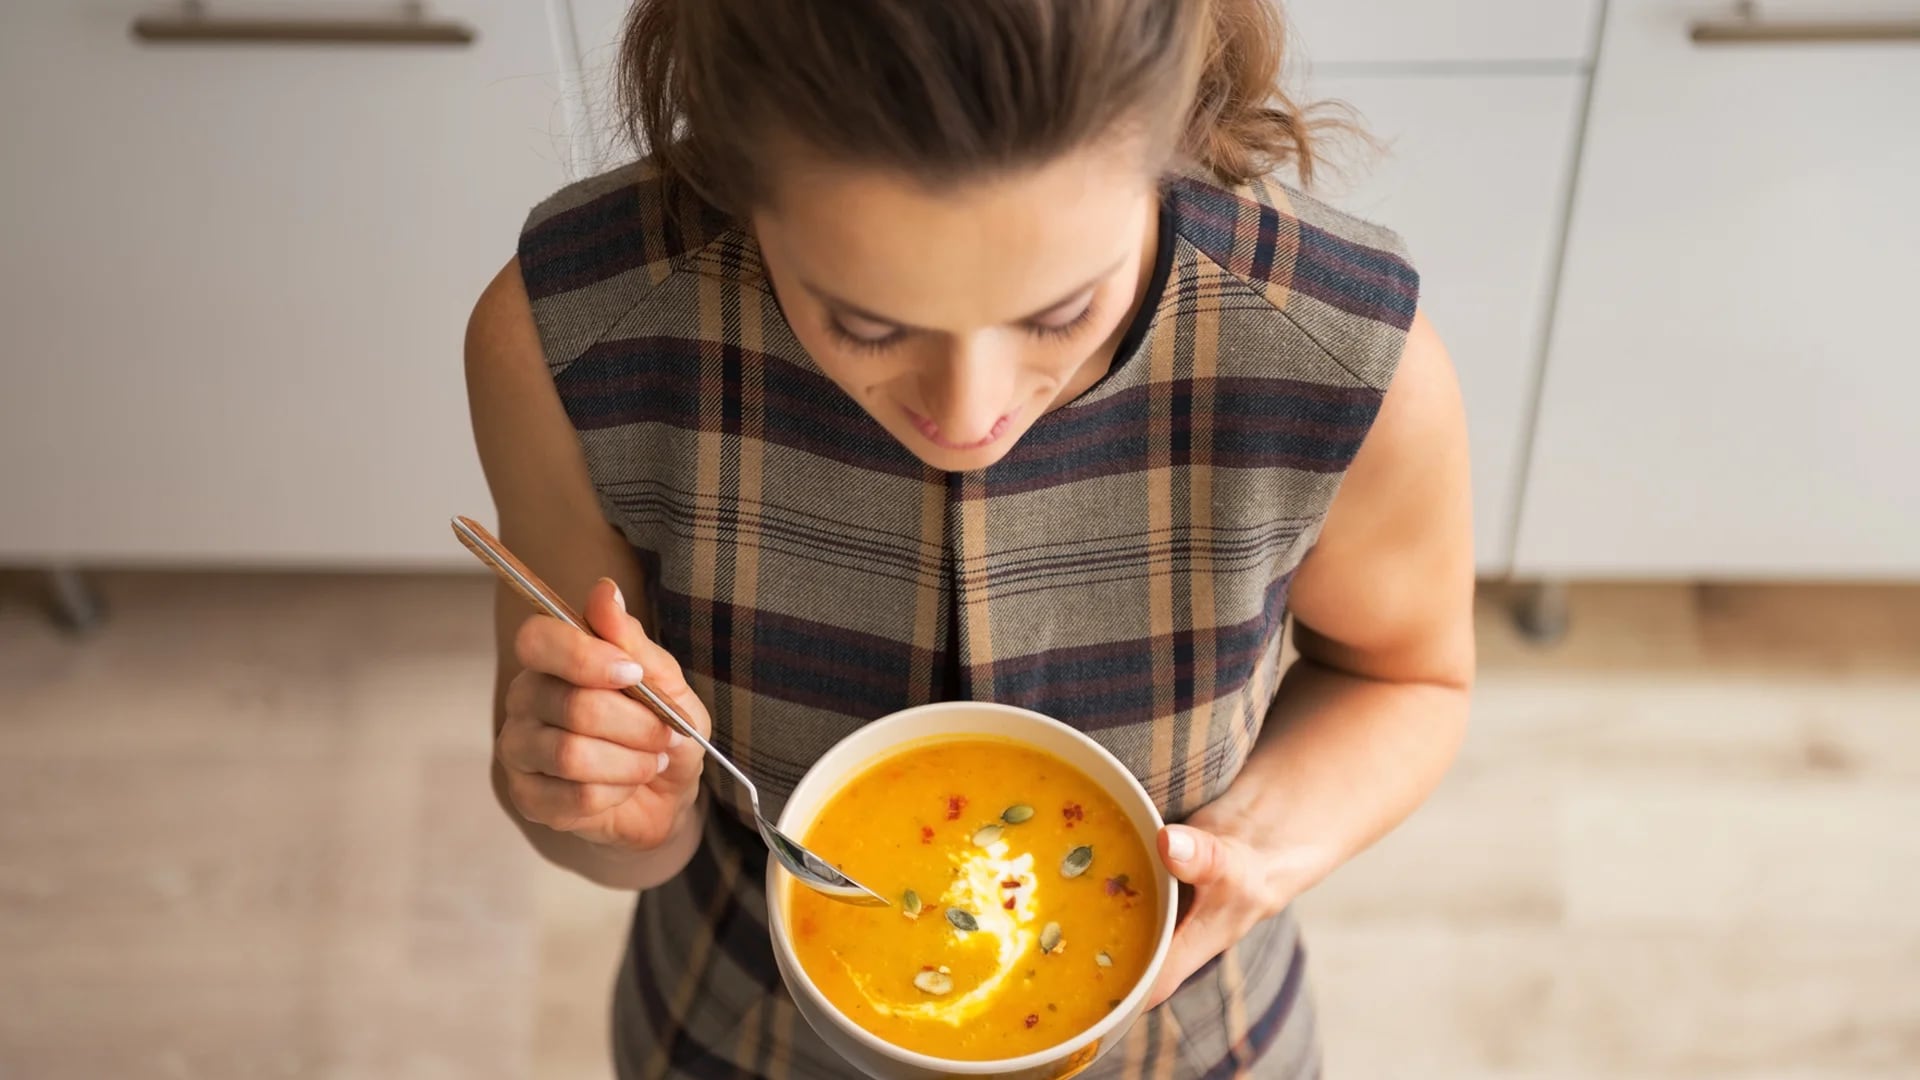 La estética del plato, su aporte nutricional y su sabor son lo que más valoran los millennials de la sopa (iStock)